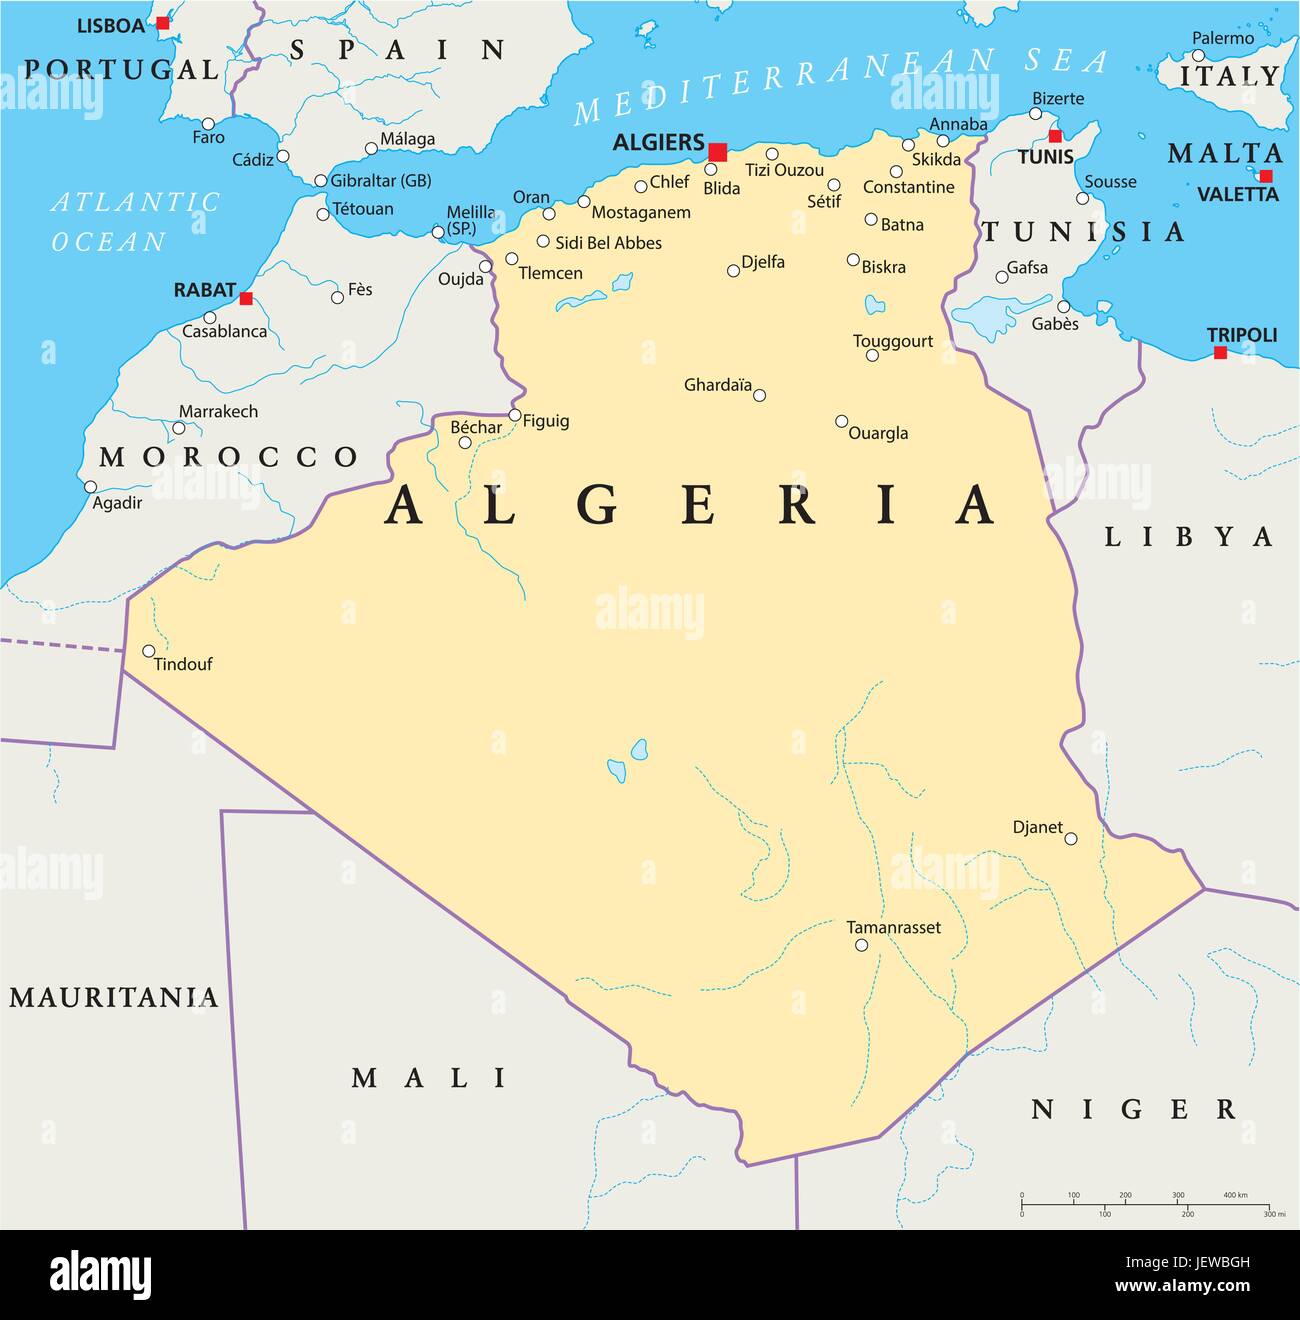 Le pays, l'état, l'Algérie, Géographie, cartographie, carte, atlas, carte du monde, Illustration de Vecteur